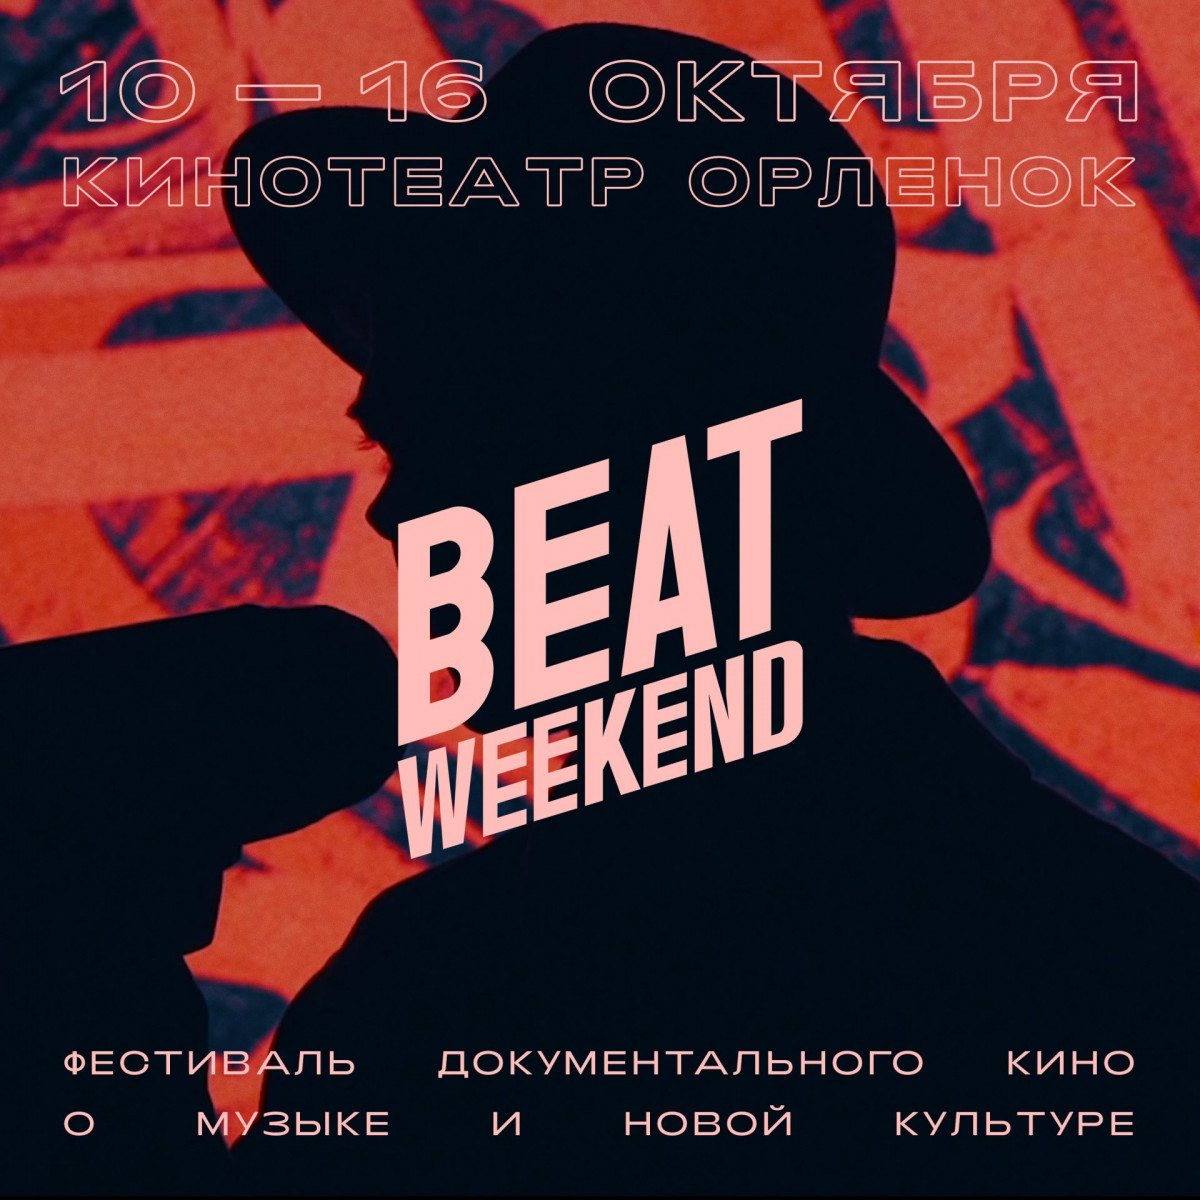 Фестиваль документального кино Beat Weekend объявляет программу в Нижнем Новгороде